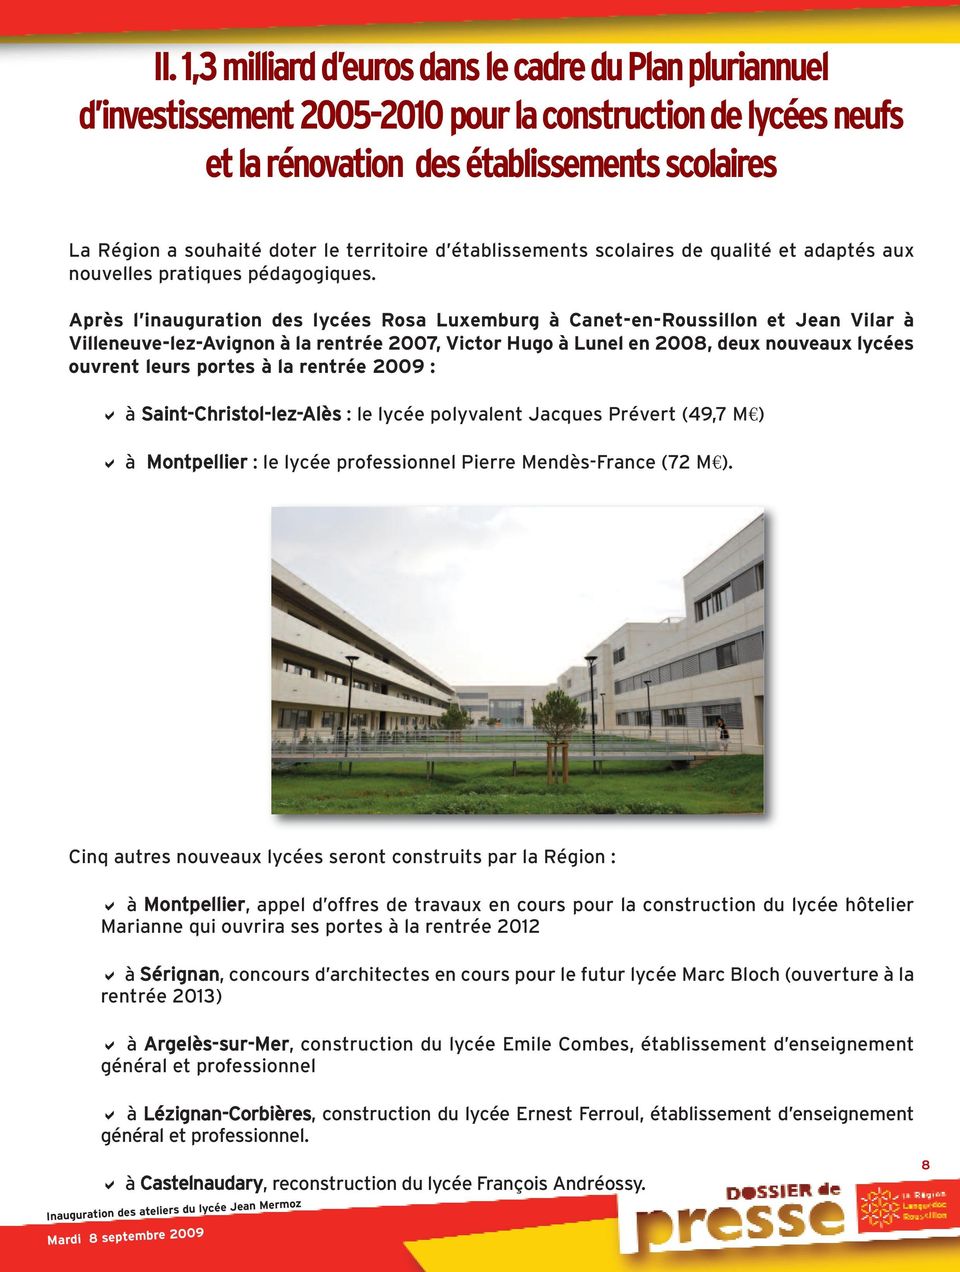 Après l inauguration des lycées Rosa Luxemburg à Canet-en-Roussillon et Jean Vilar à Villeneuve-lez-Avignon à la rentrée 2007, Victor Hugo à Lunel en 2008, deux nouveaux lycées ouvrent leurs portes à